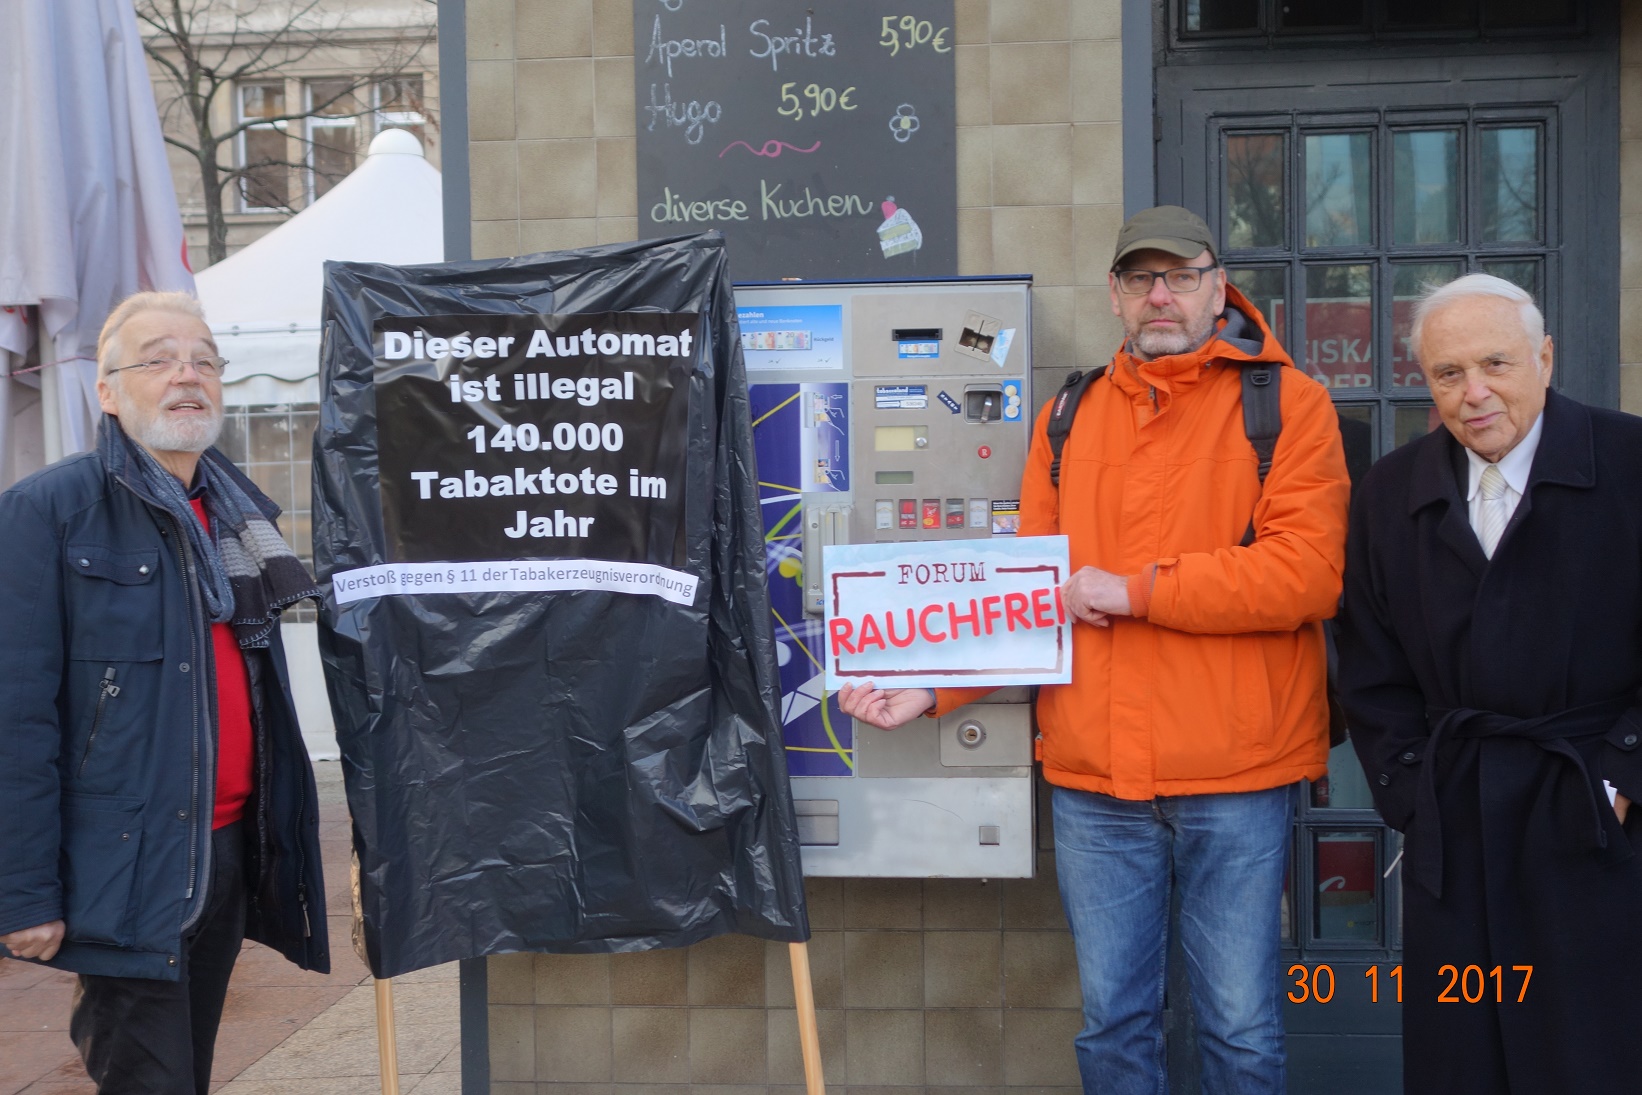 Zigarettenautomat verhüllt – Protest gegen Untätigkeit der Behörden